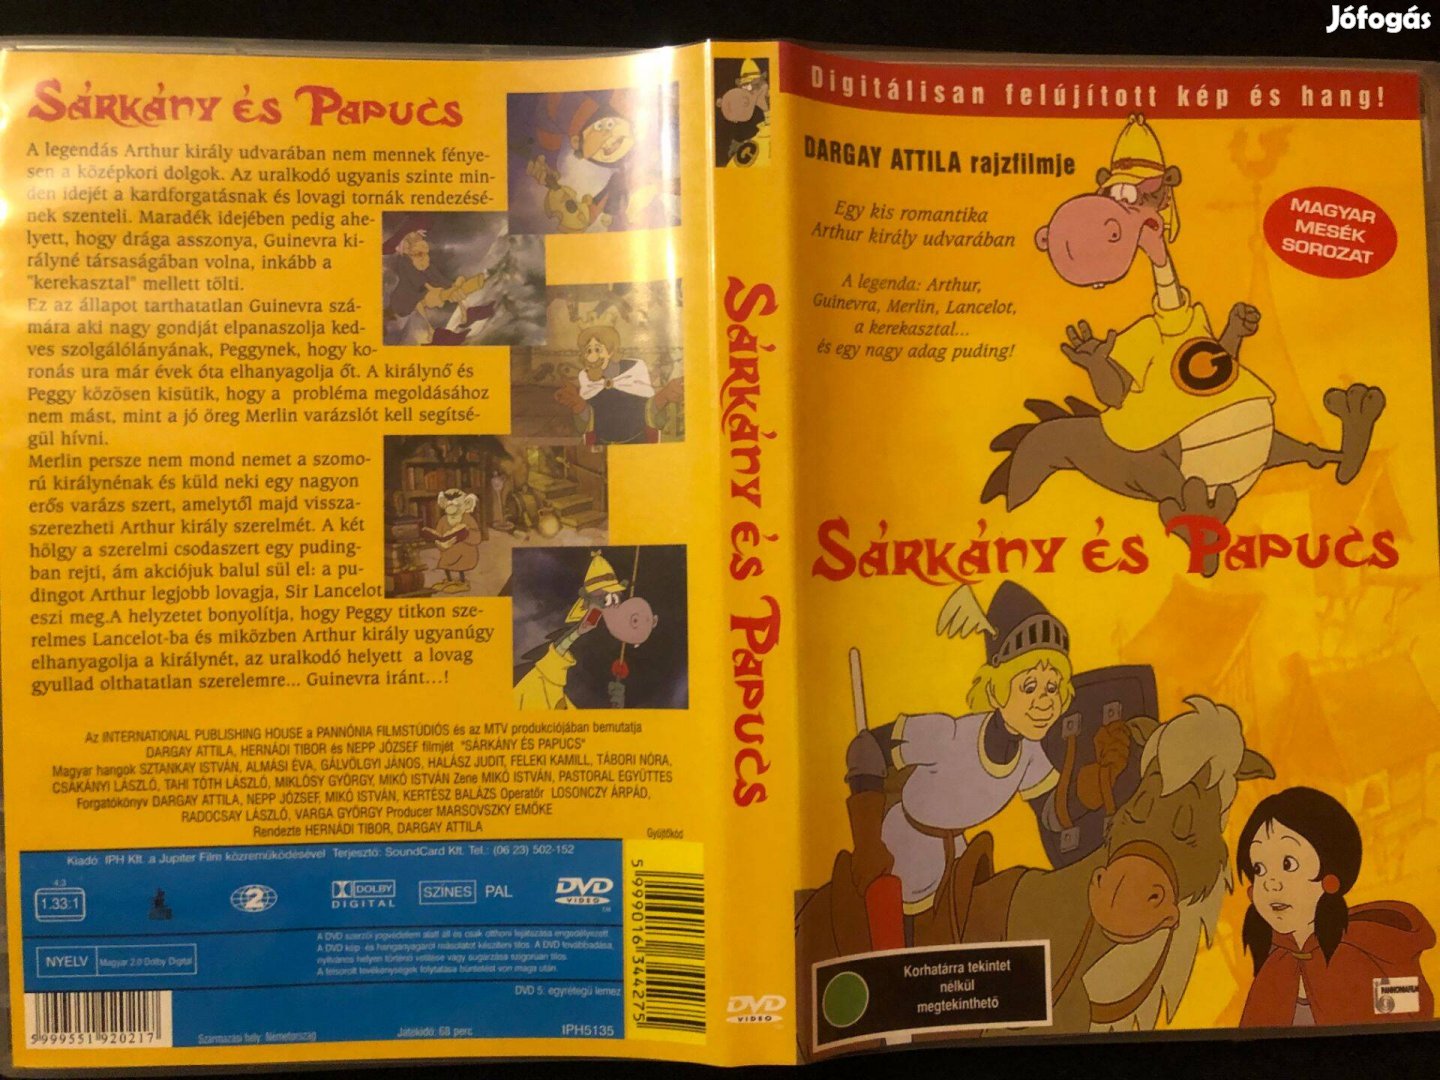 Sárkány és Papucs DVD (Dargay Attila, karcmentes, felújított)